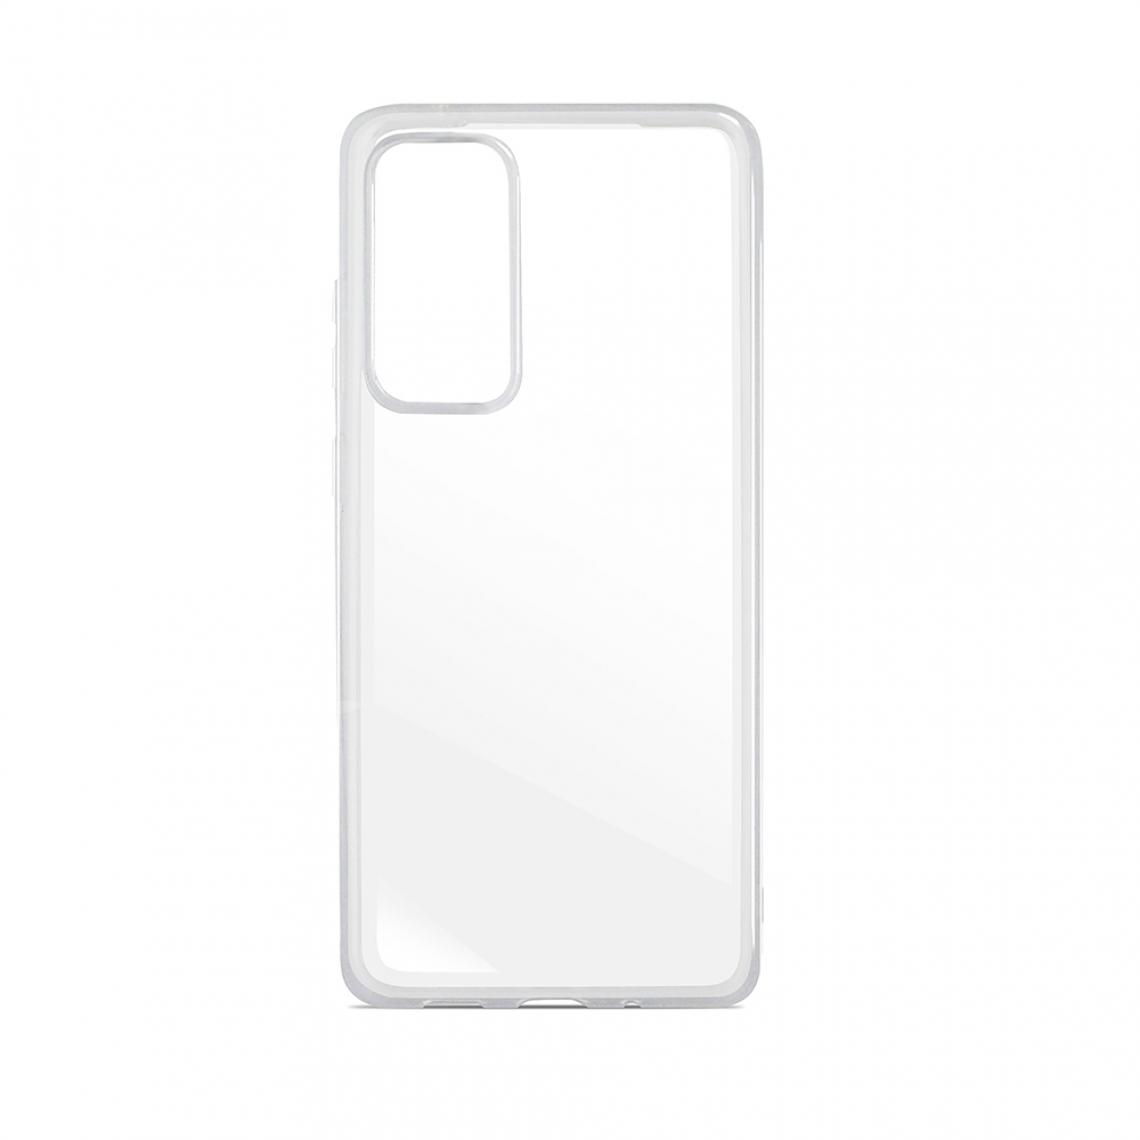 Mooov - Coque souple transparente pour Samsung A52 5G - Coque, étui smartphone